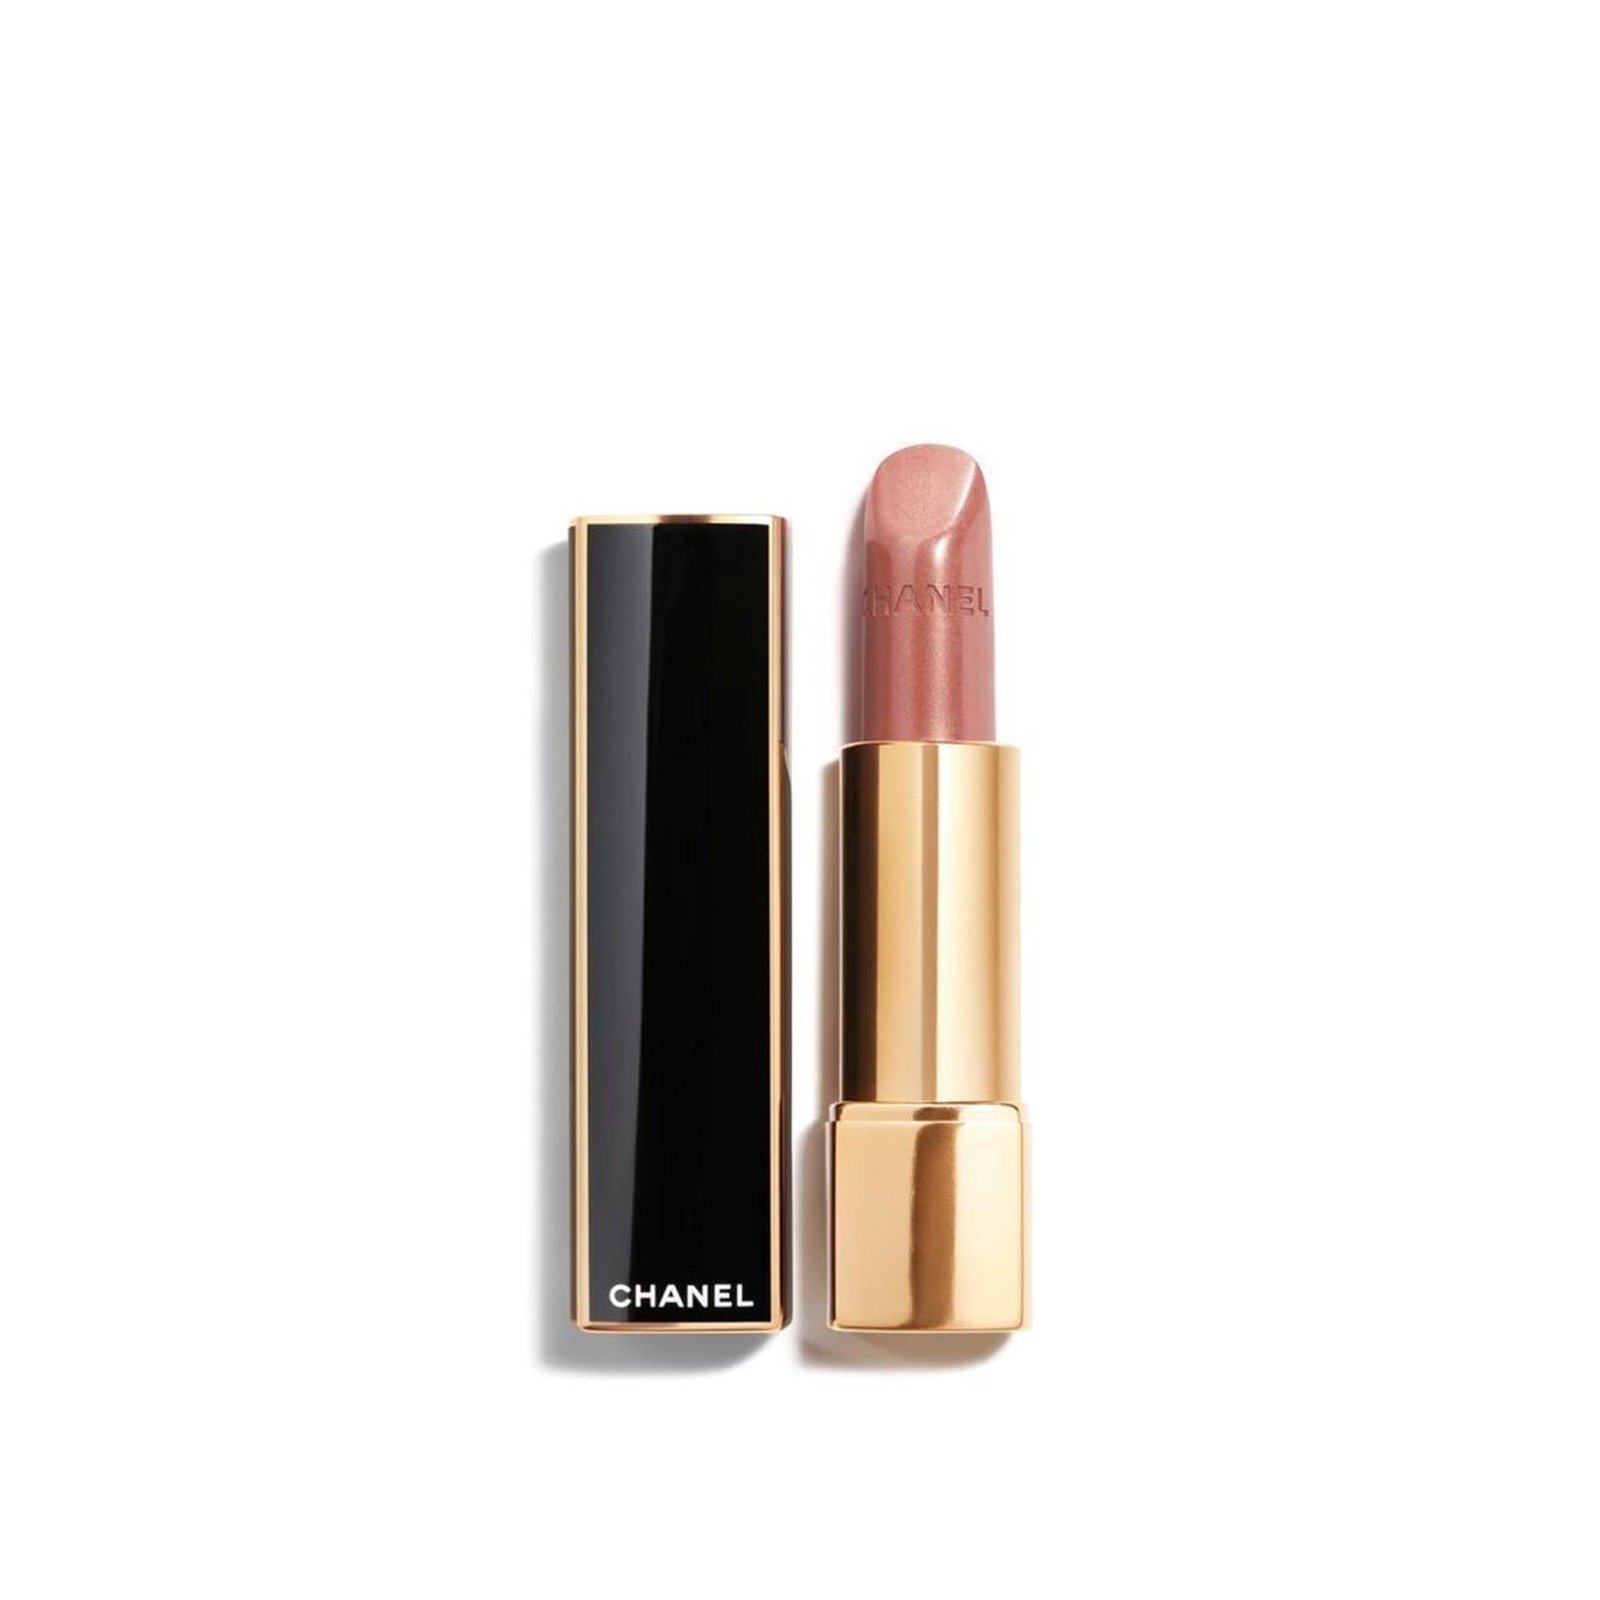 CHANEL Rouge Allure Luminous Intense Lip Colour 107 Or Beige 3.5g (0.12 oz)